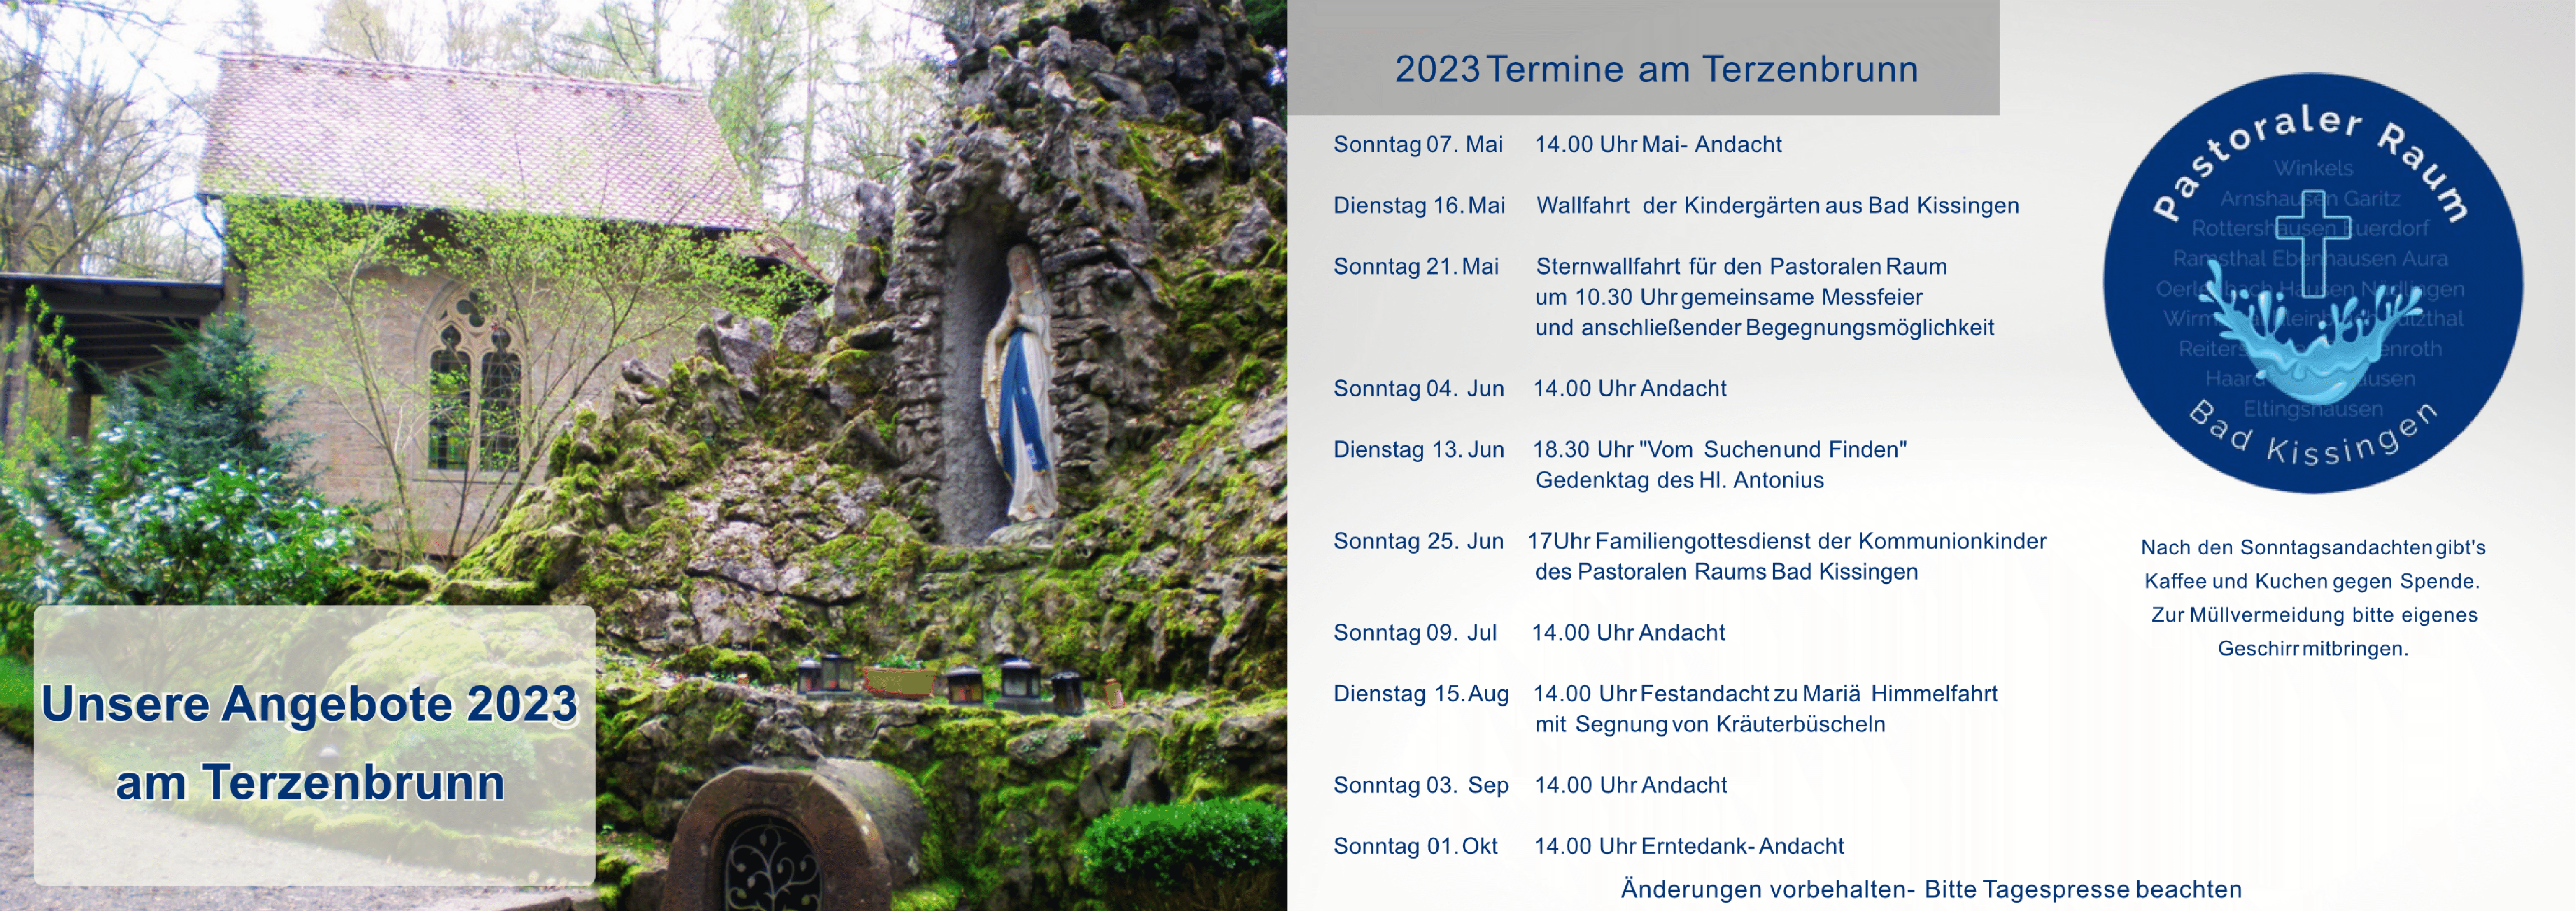 Gottesdienste 2023 Terzenbrunn Termine